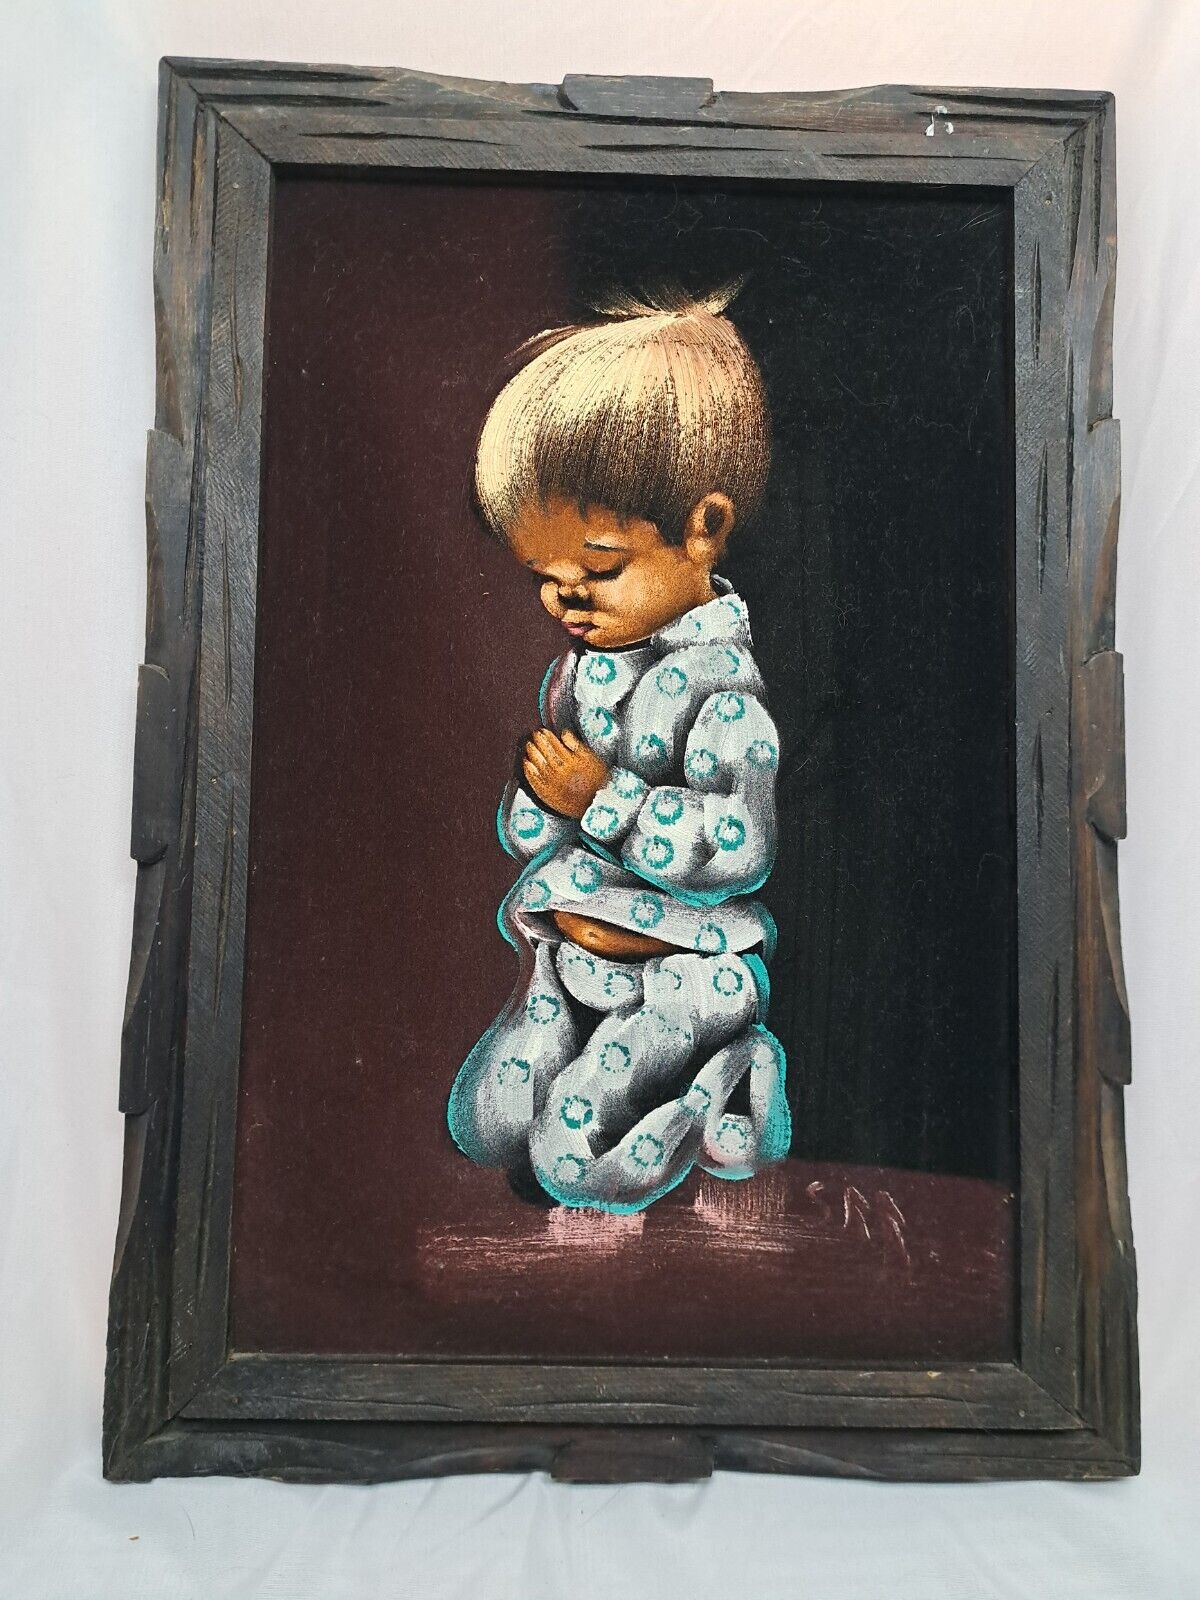 Vintage Black Velvet Painting Child Praying 1970s Wood Framed Signed